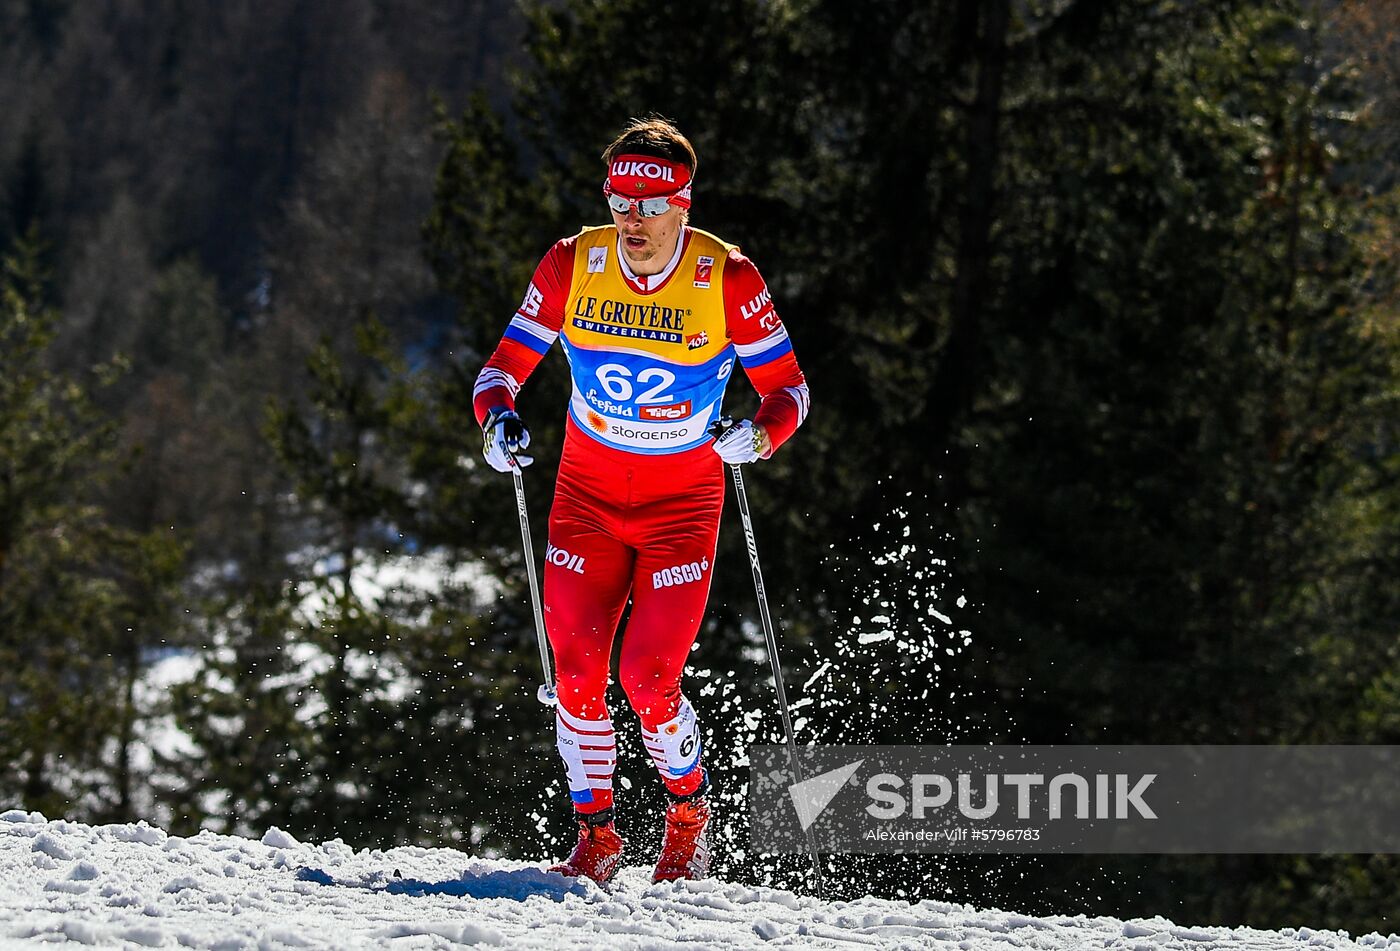 Austria Ski Worlds Interval Start Classic Men